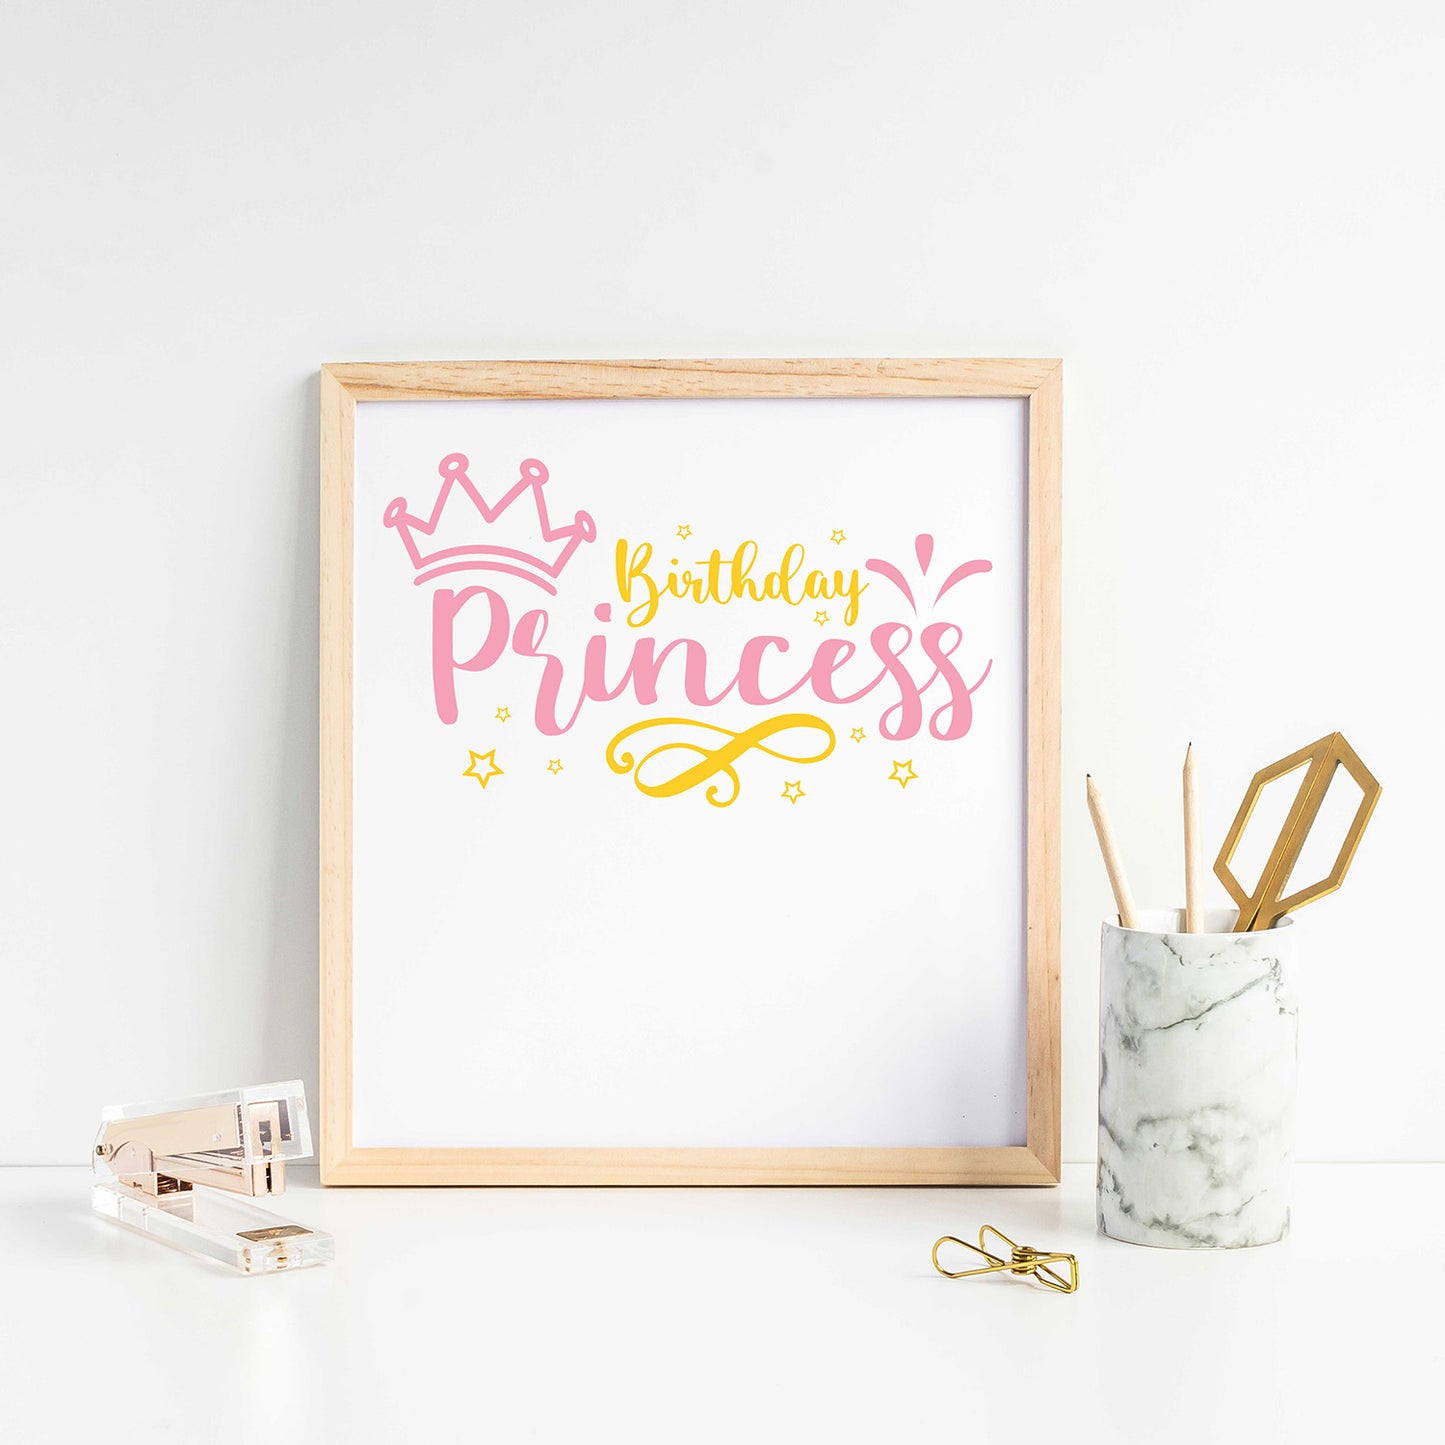 "Birthday Princess" Graphic